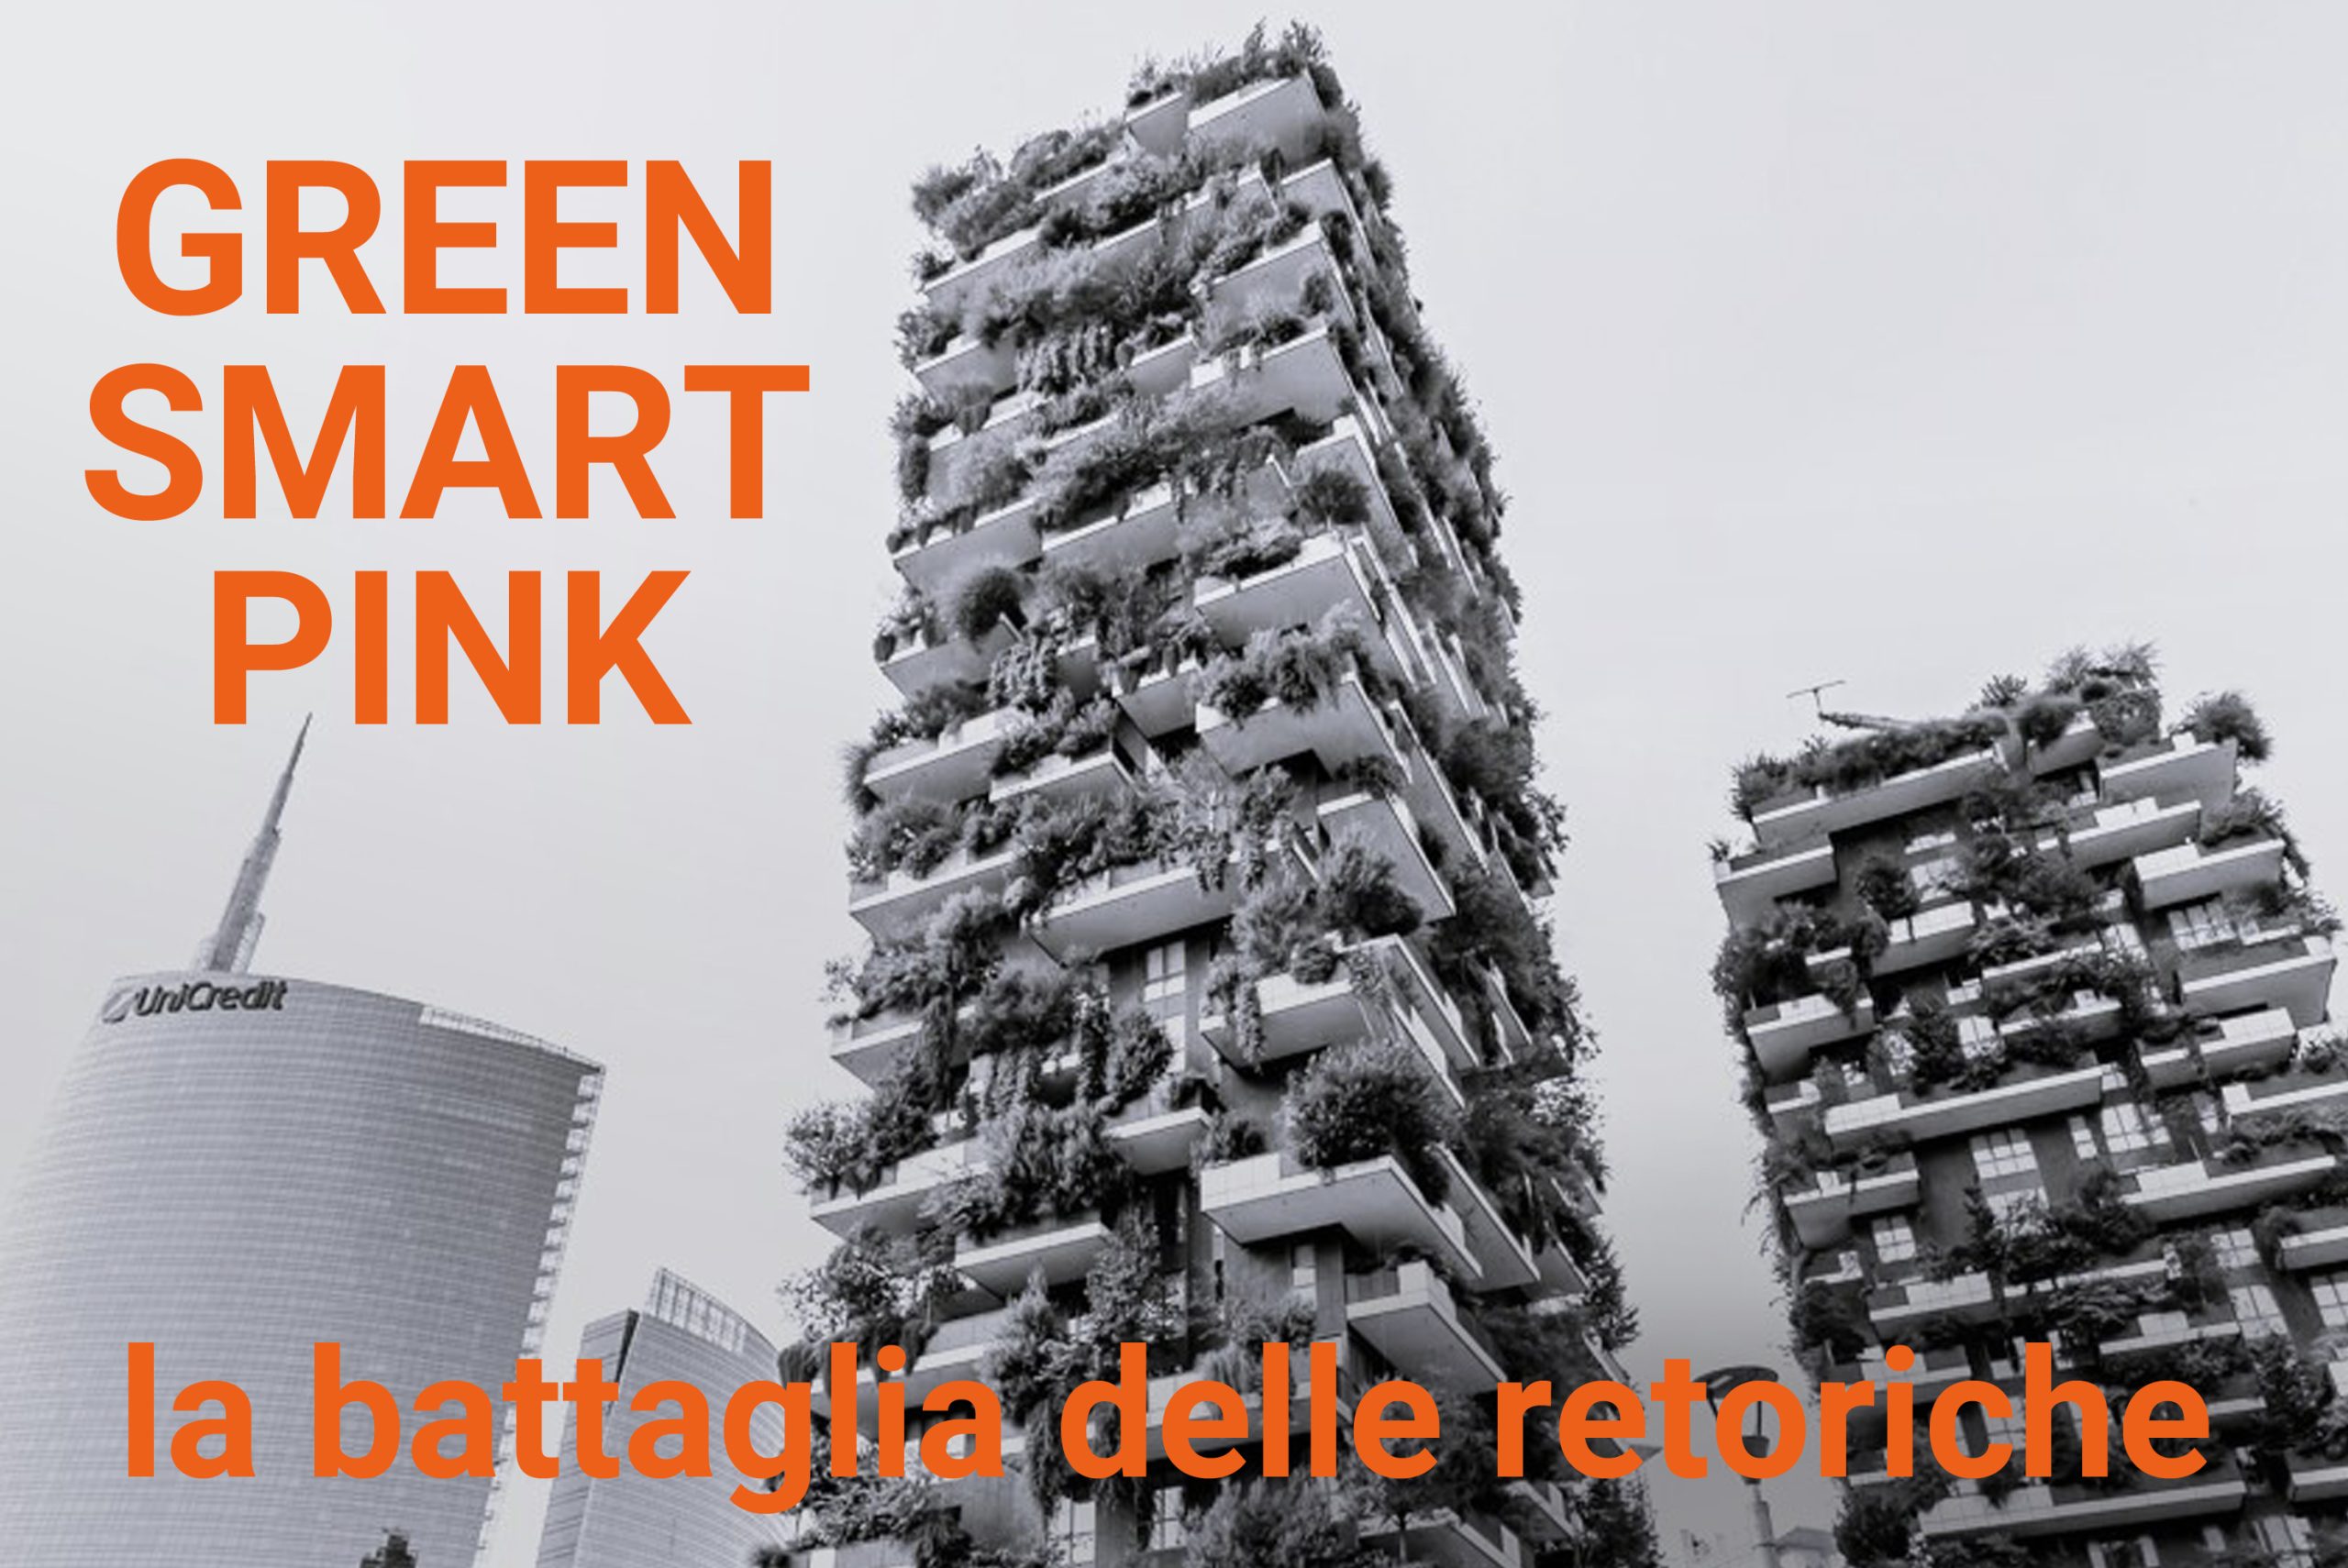 www.novantatrepercento.it n.37 "GREEN, SMART, PINK – la battaglia delle retoriche", in foto: Il "Bosco Verticale" a Milano